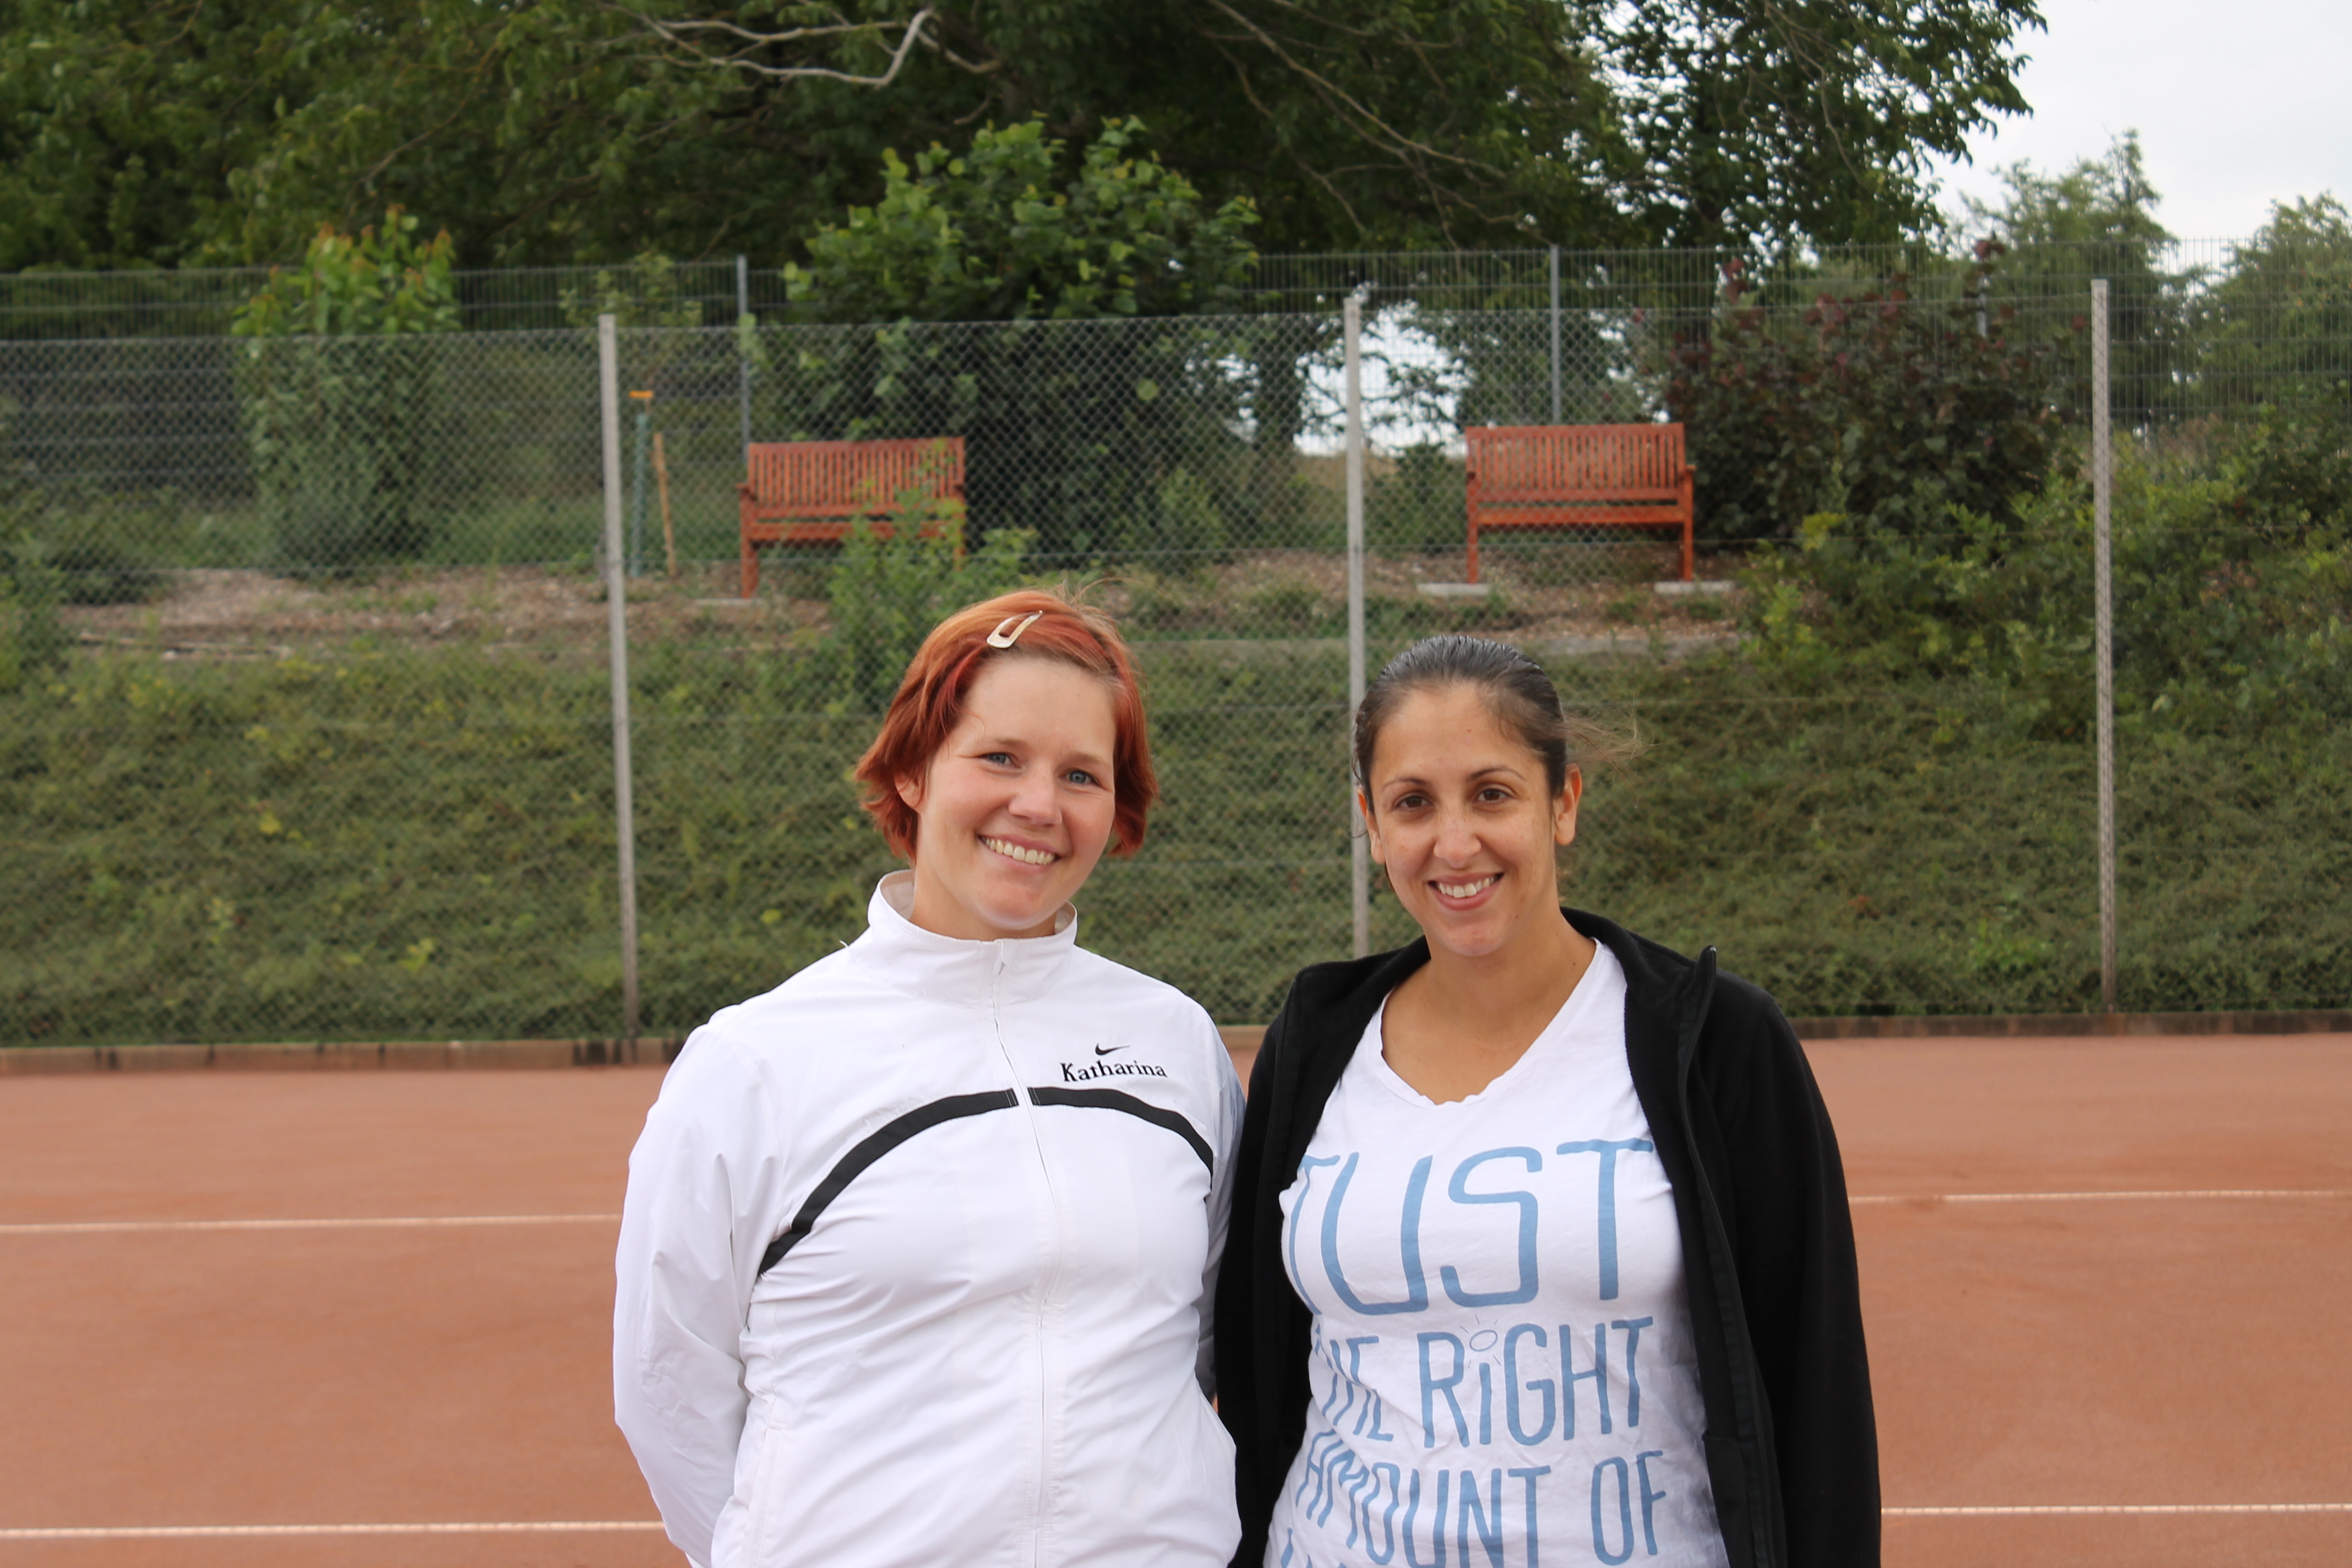 Zwei Freitagsmädels vor ihrem Match: Katharina Rüd (links) und Christina Josten (rechts)